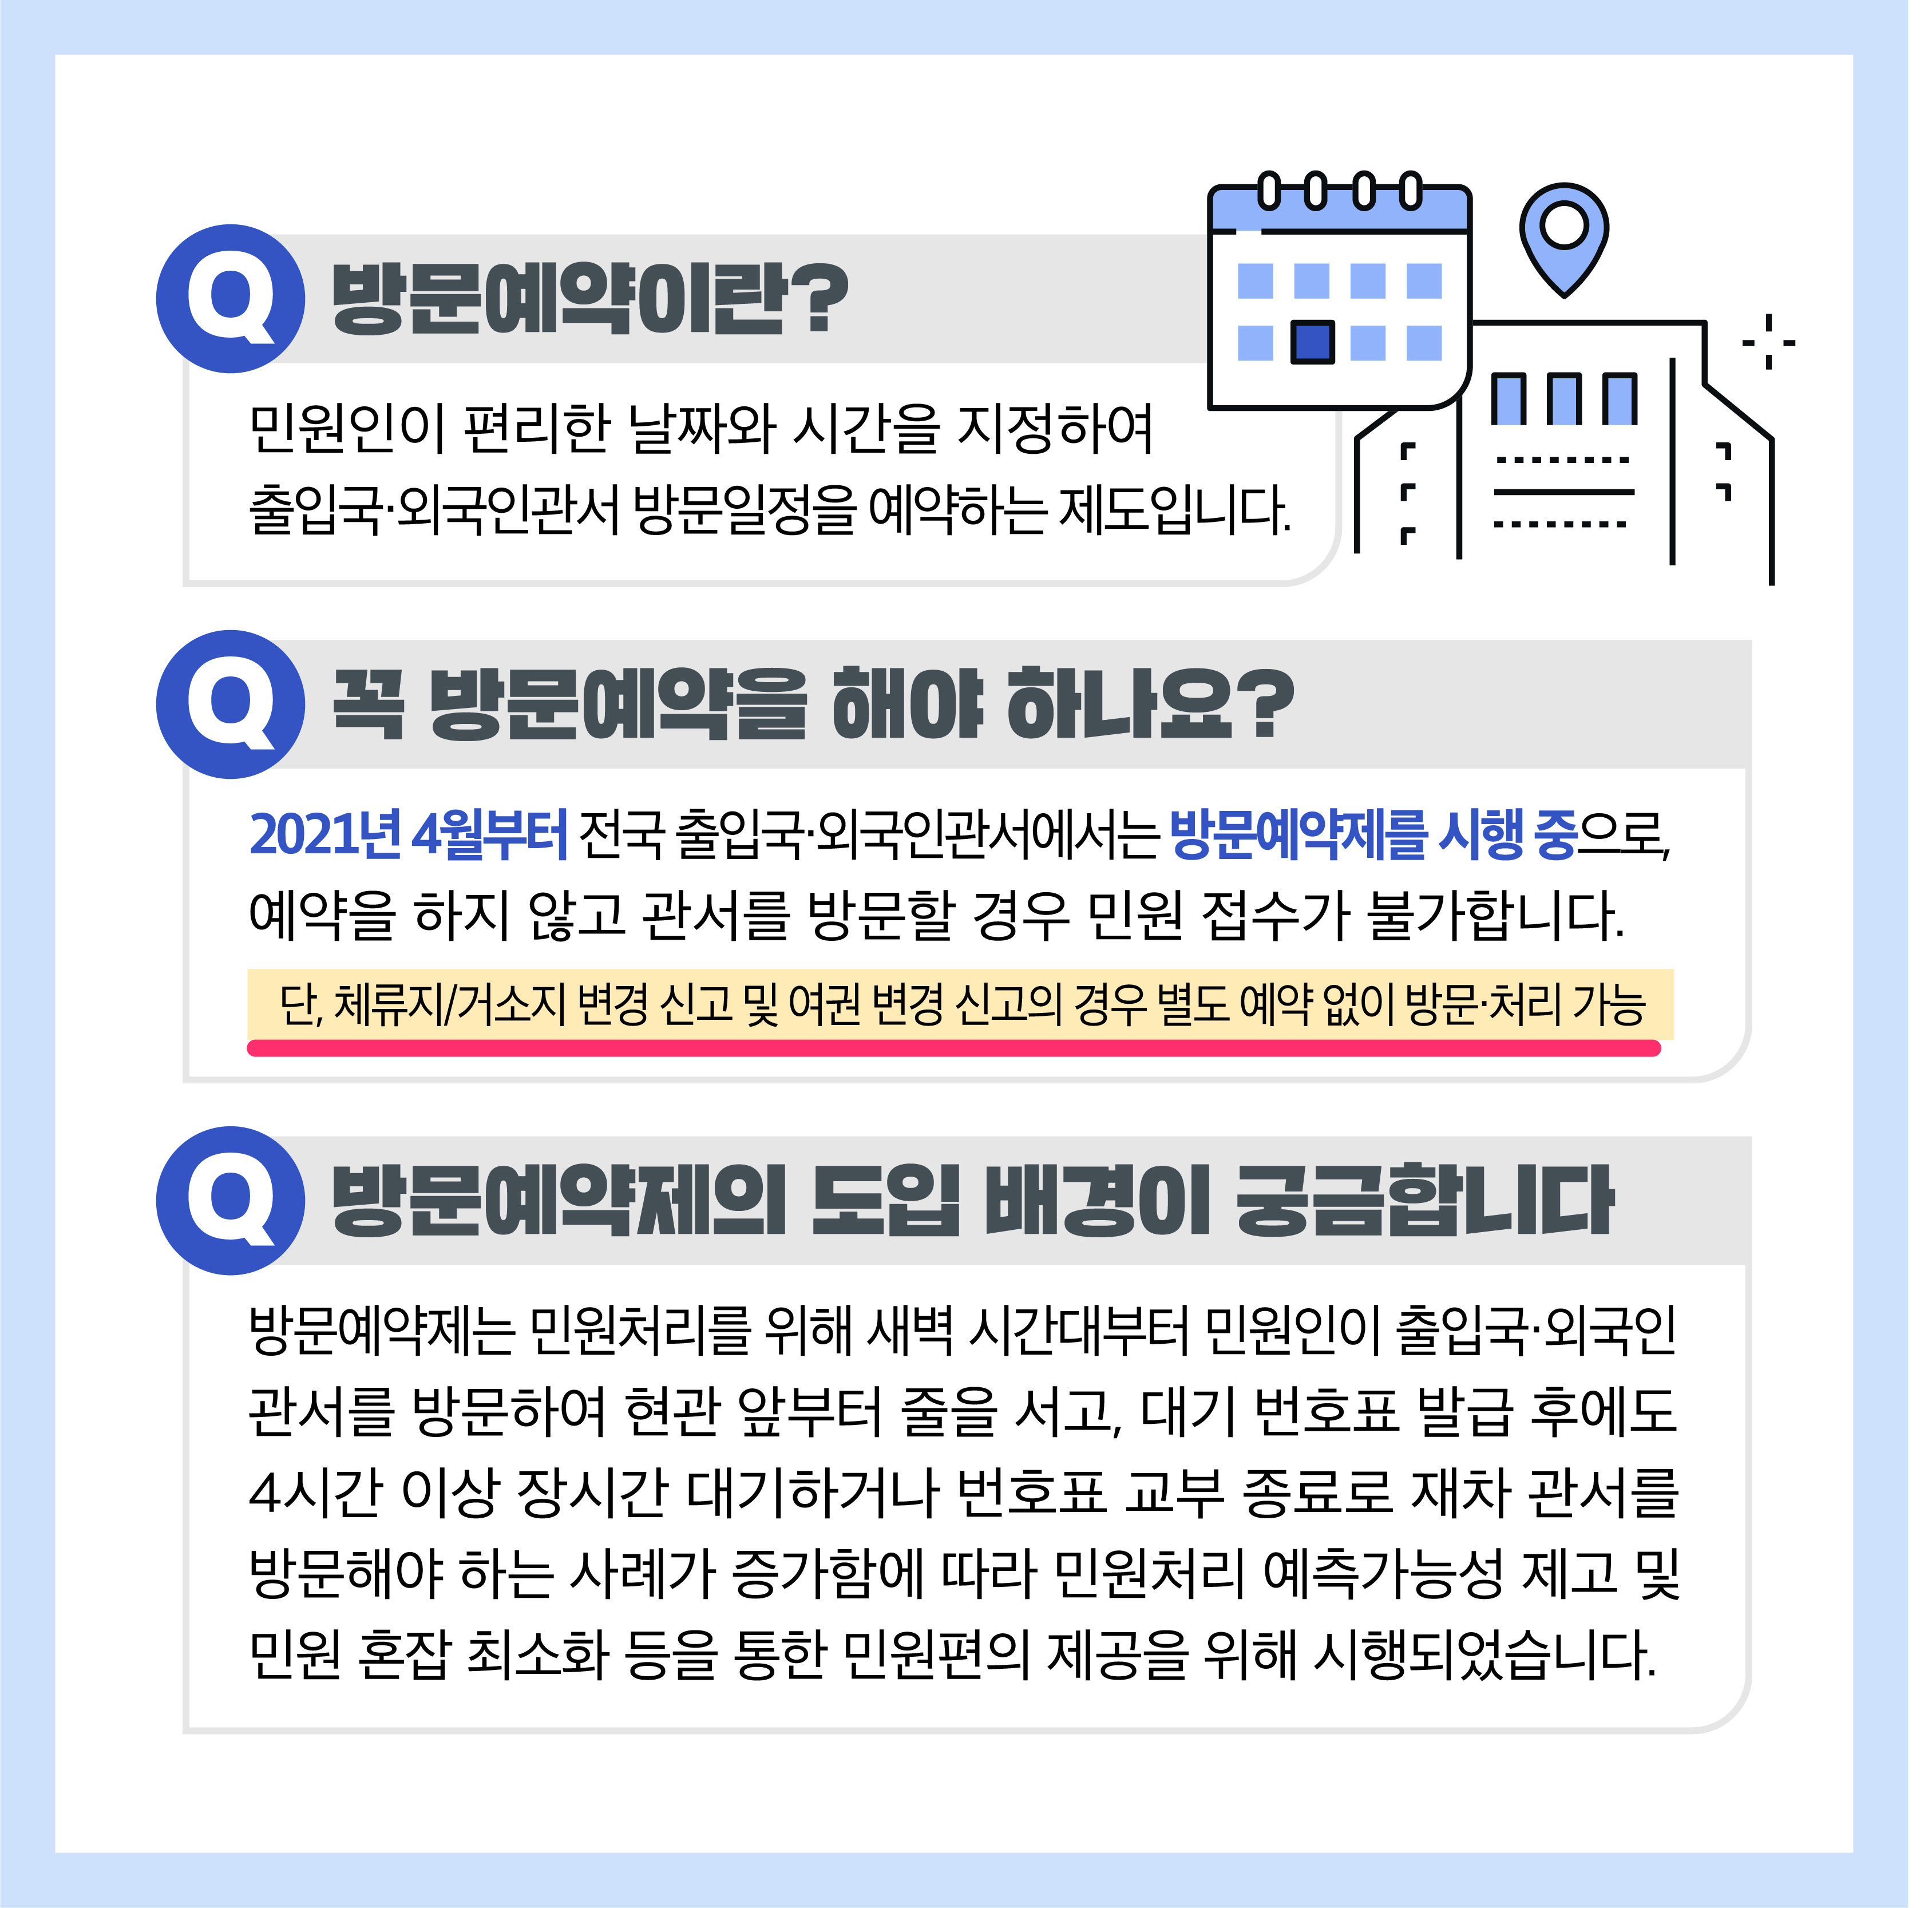 韓国で住所変更をするとき、出入国管理事務所への訪問予約は不要